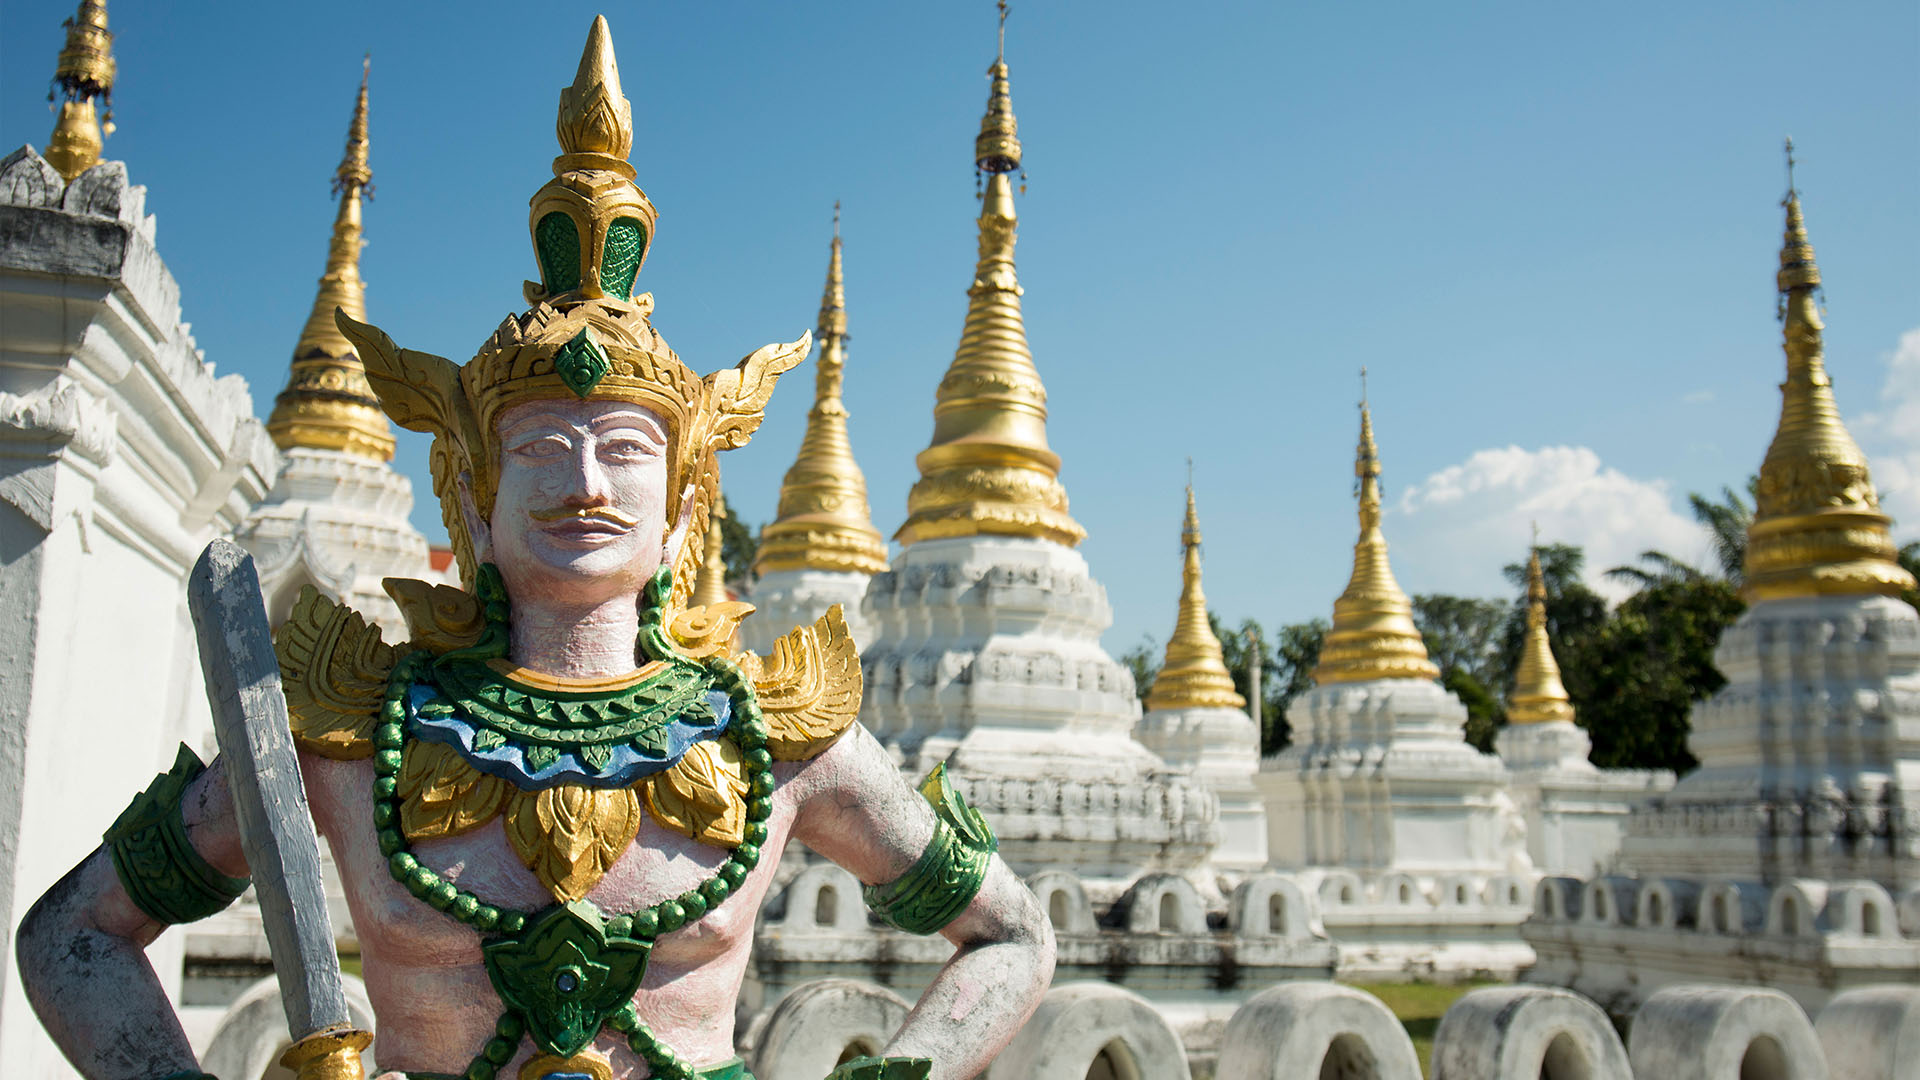 Le Sud de la Thaïlande - Offizielle Seite Thailändisches Fremdenverkehrsamt